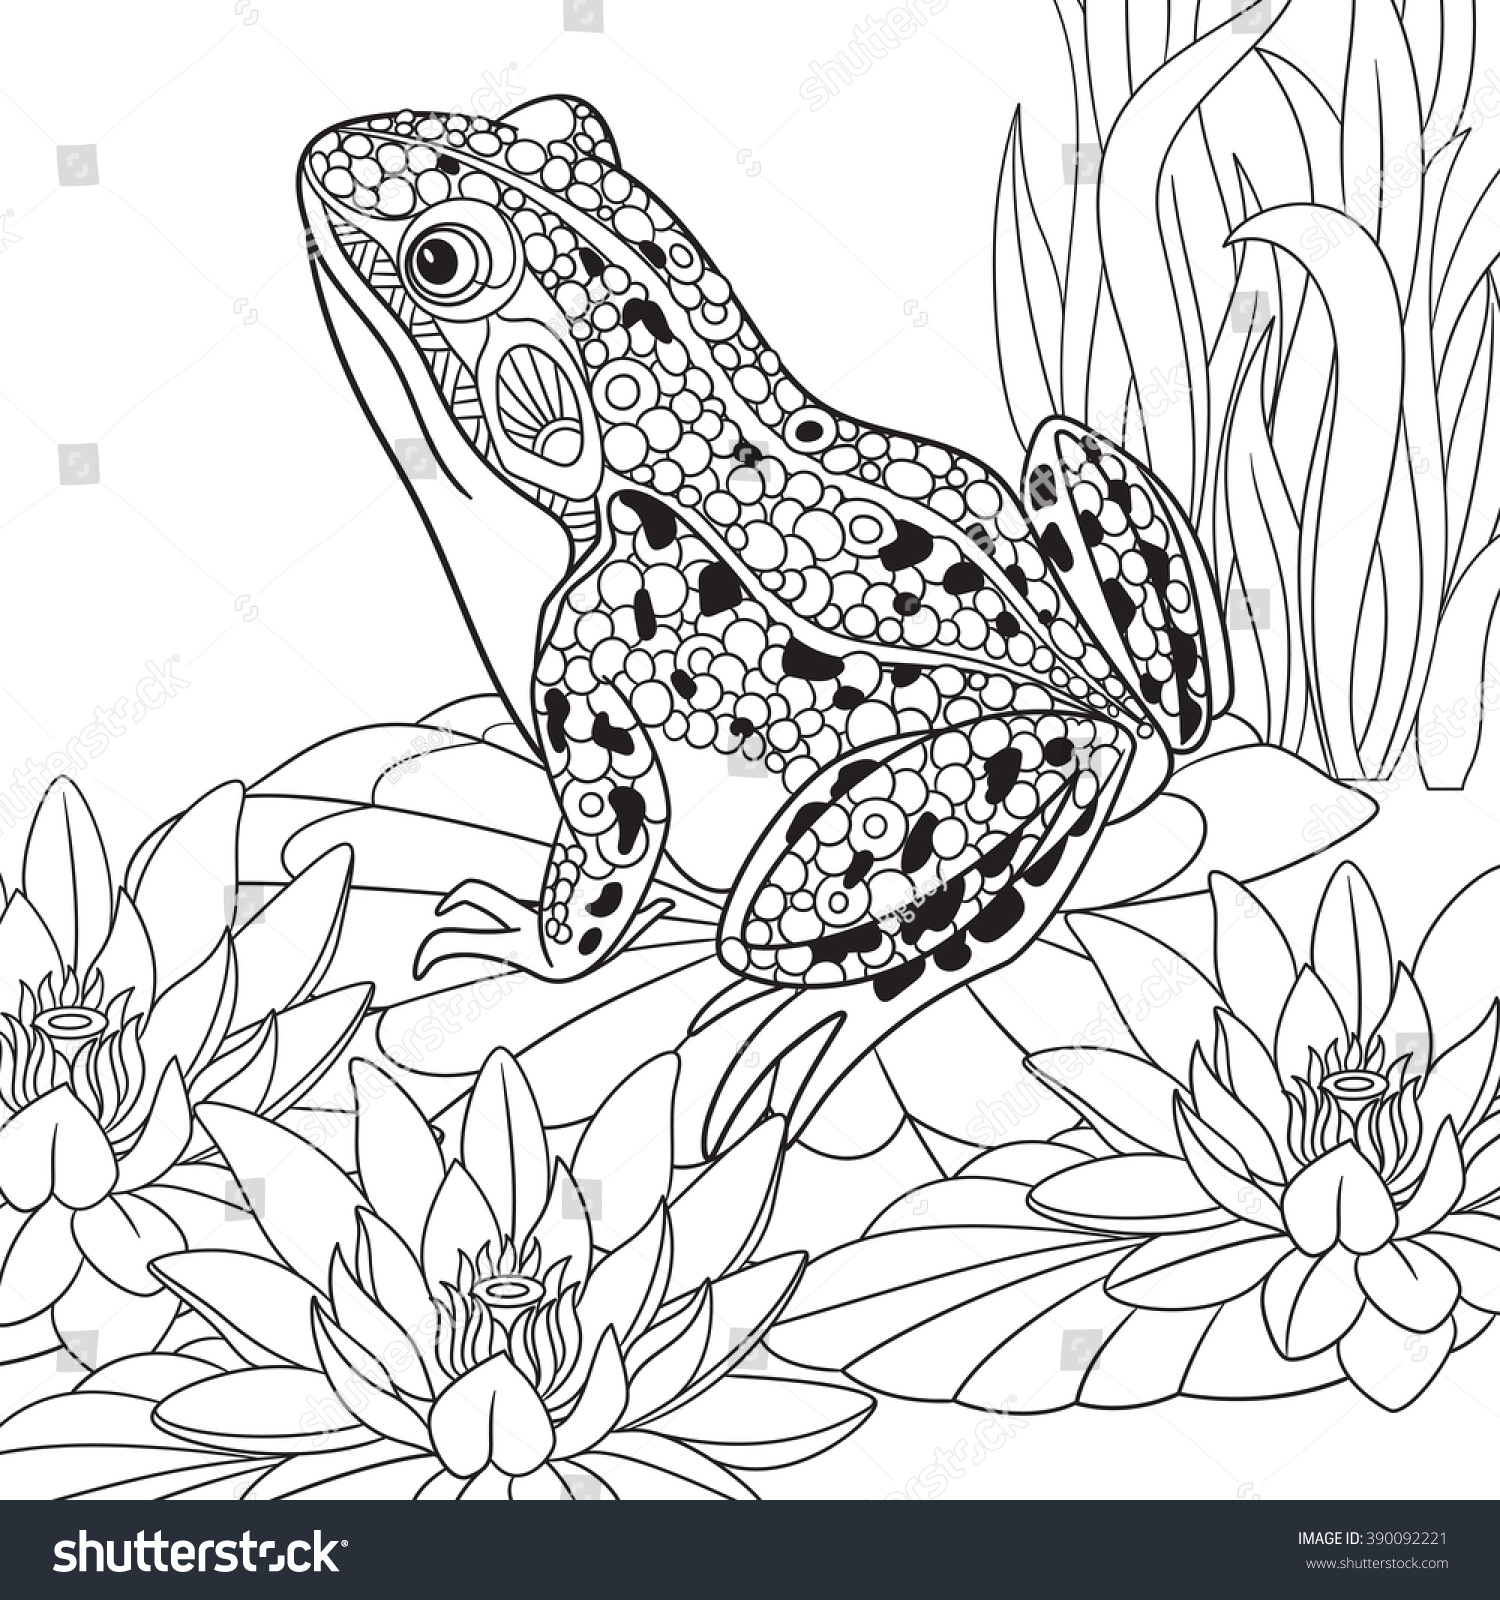 Zentangle Stylized Cartoon Frog Sitting Among Stock Vector 390092221